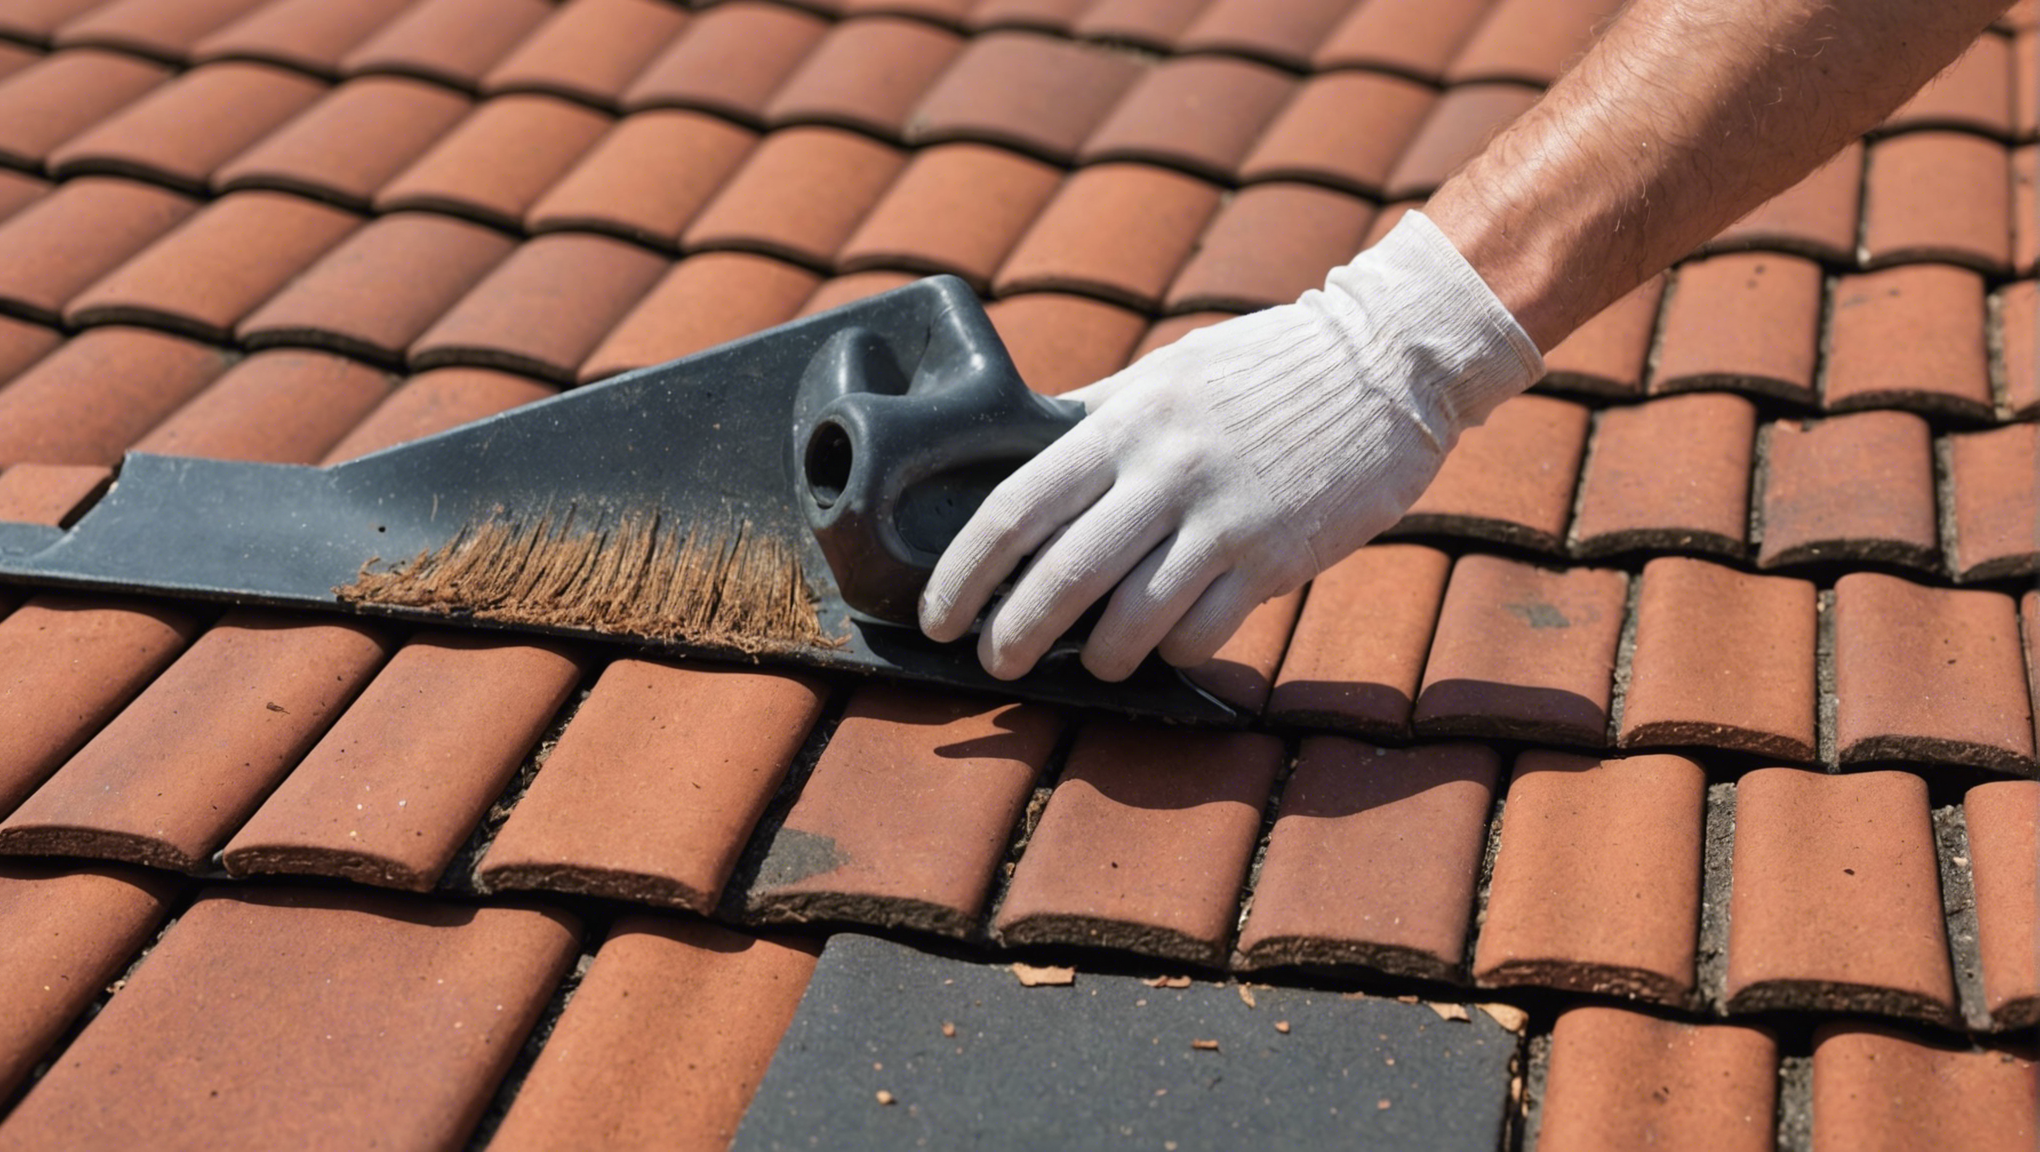 découvrez nos conseils pour nettoyer votre toiture en tuile de manière efficace et sans risque. retrouvez une toiture propre et en bon état grâce à nos astuces de nettoyage.